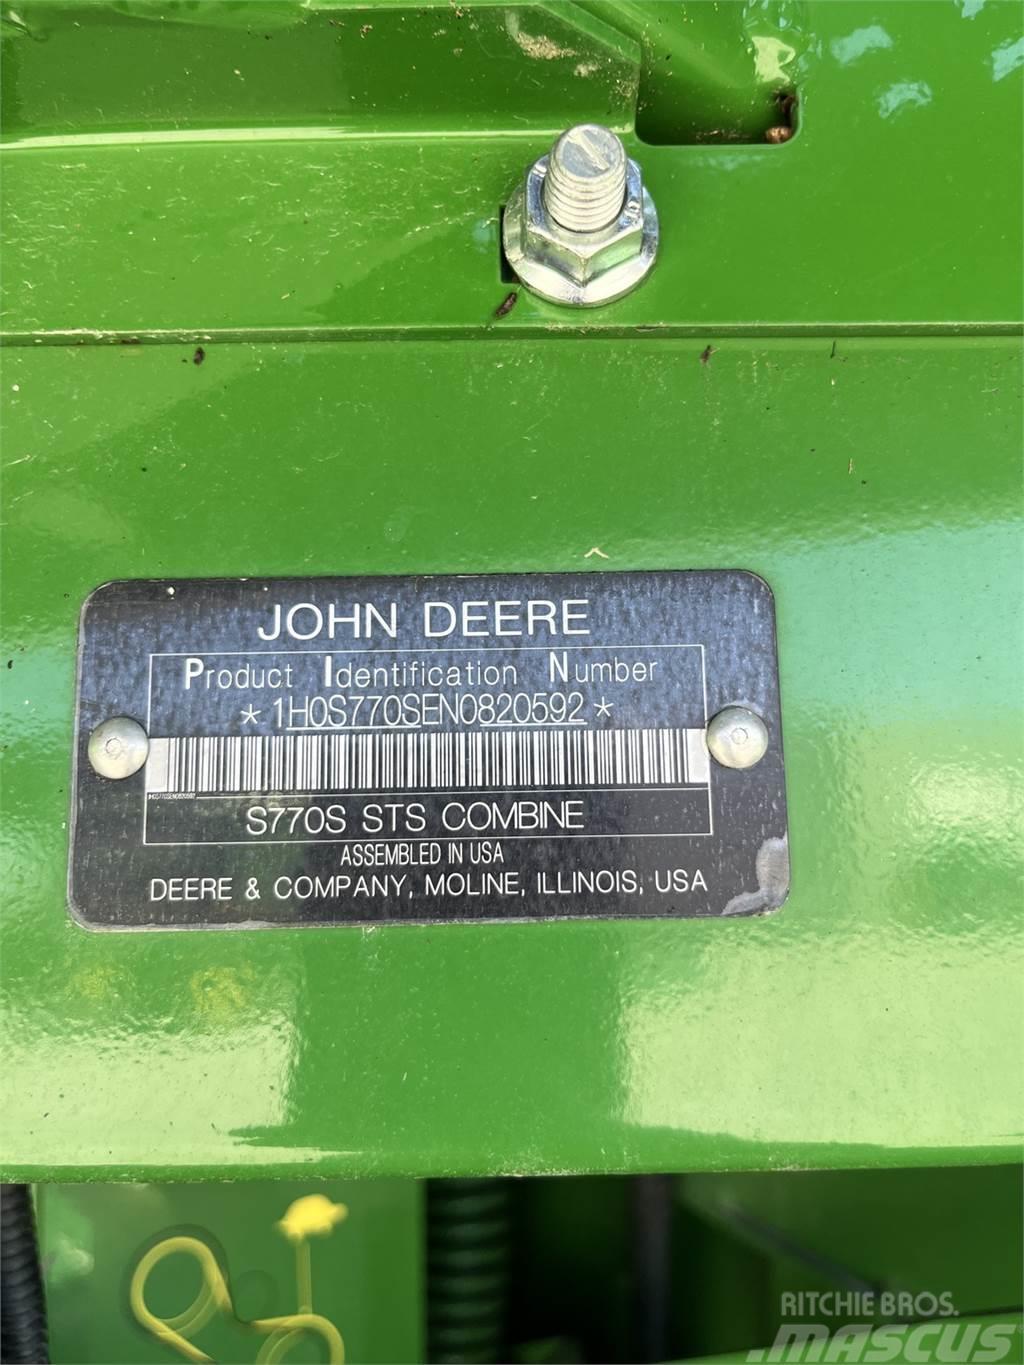 John Deere S770 Mejetærskere